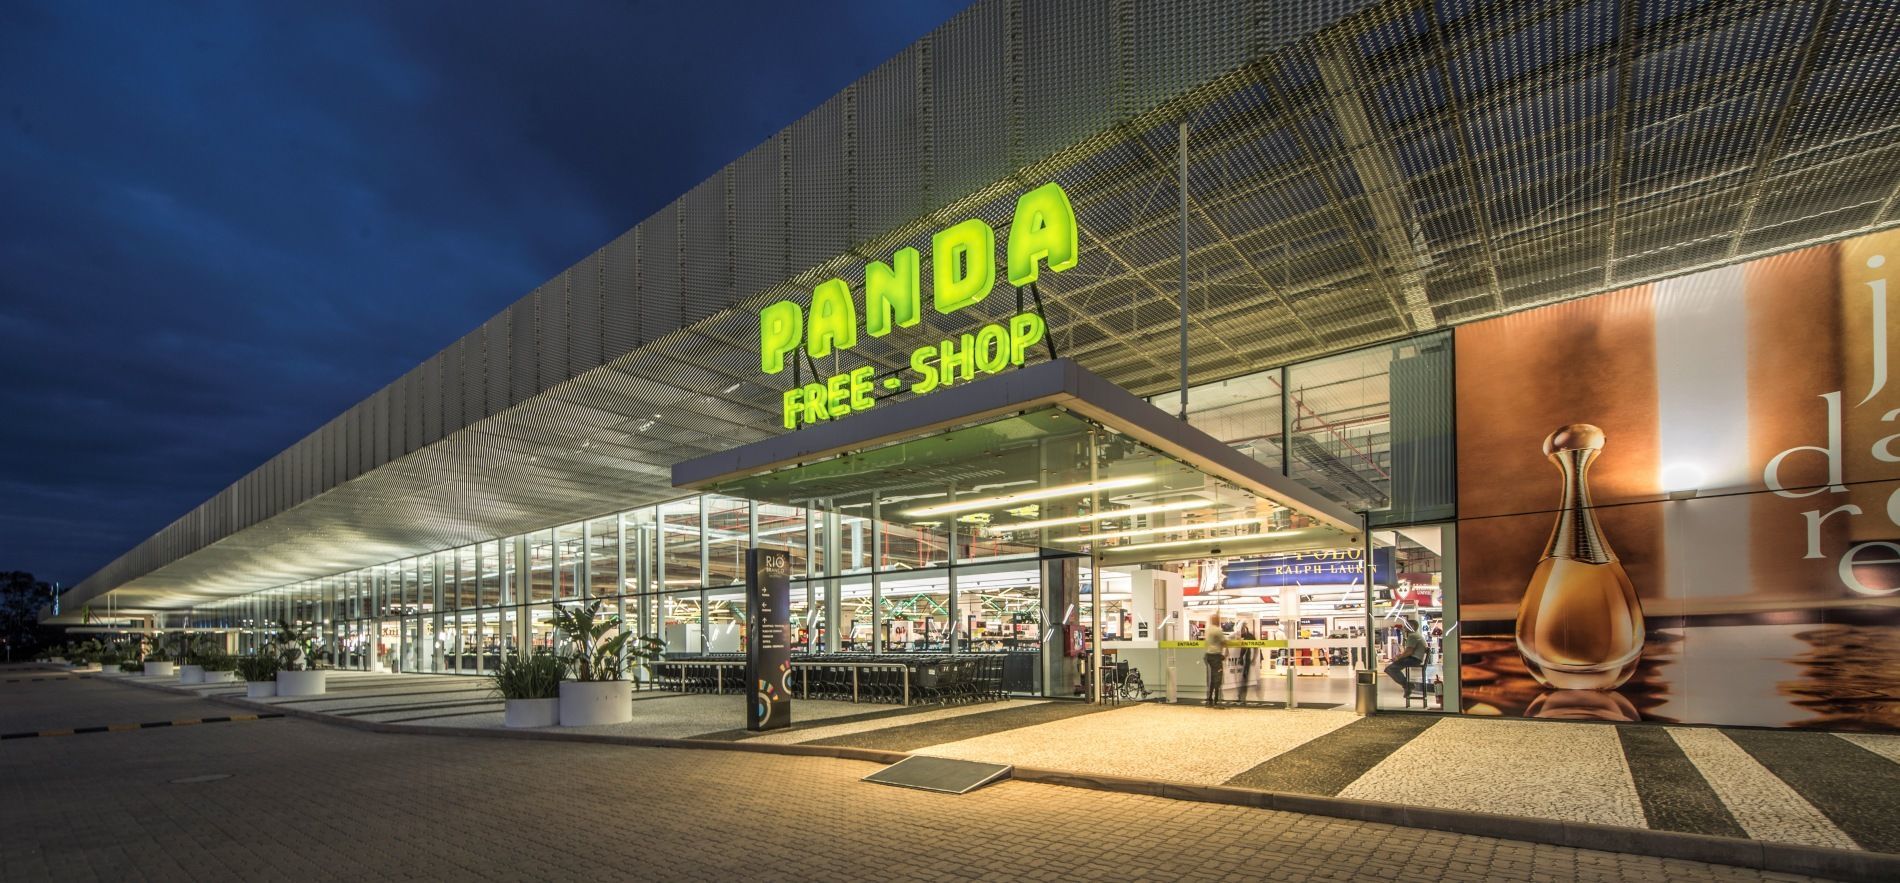 Panda Free Shop